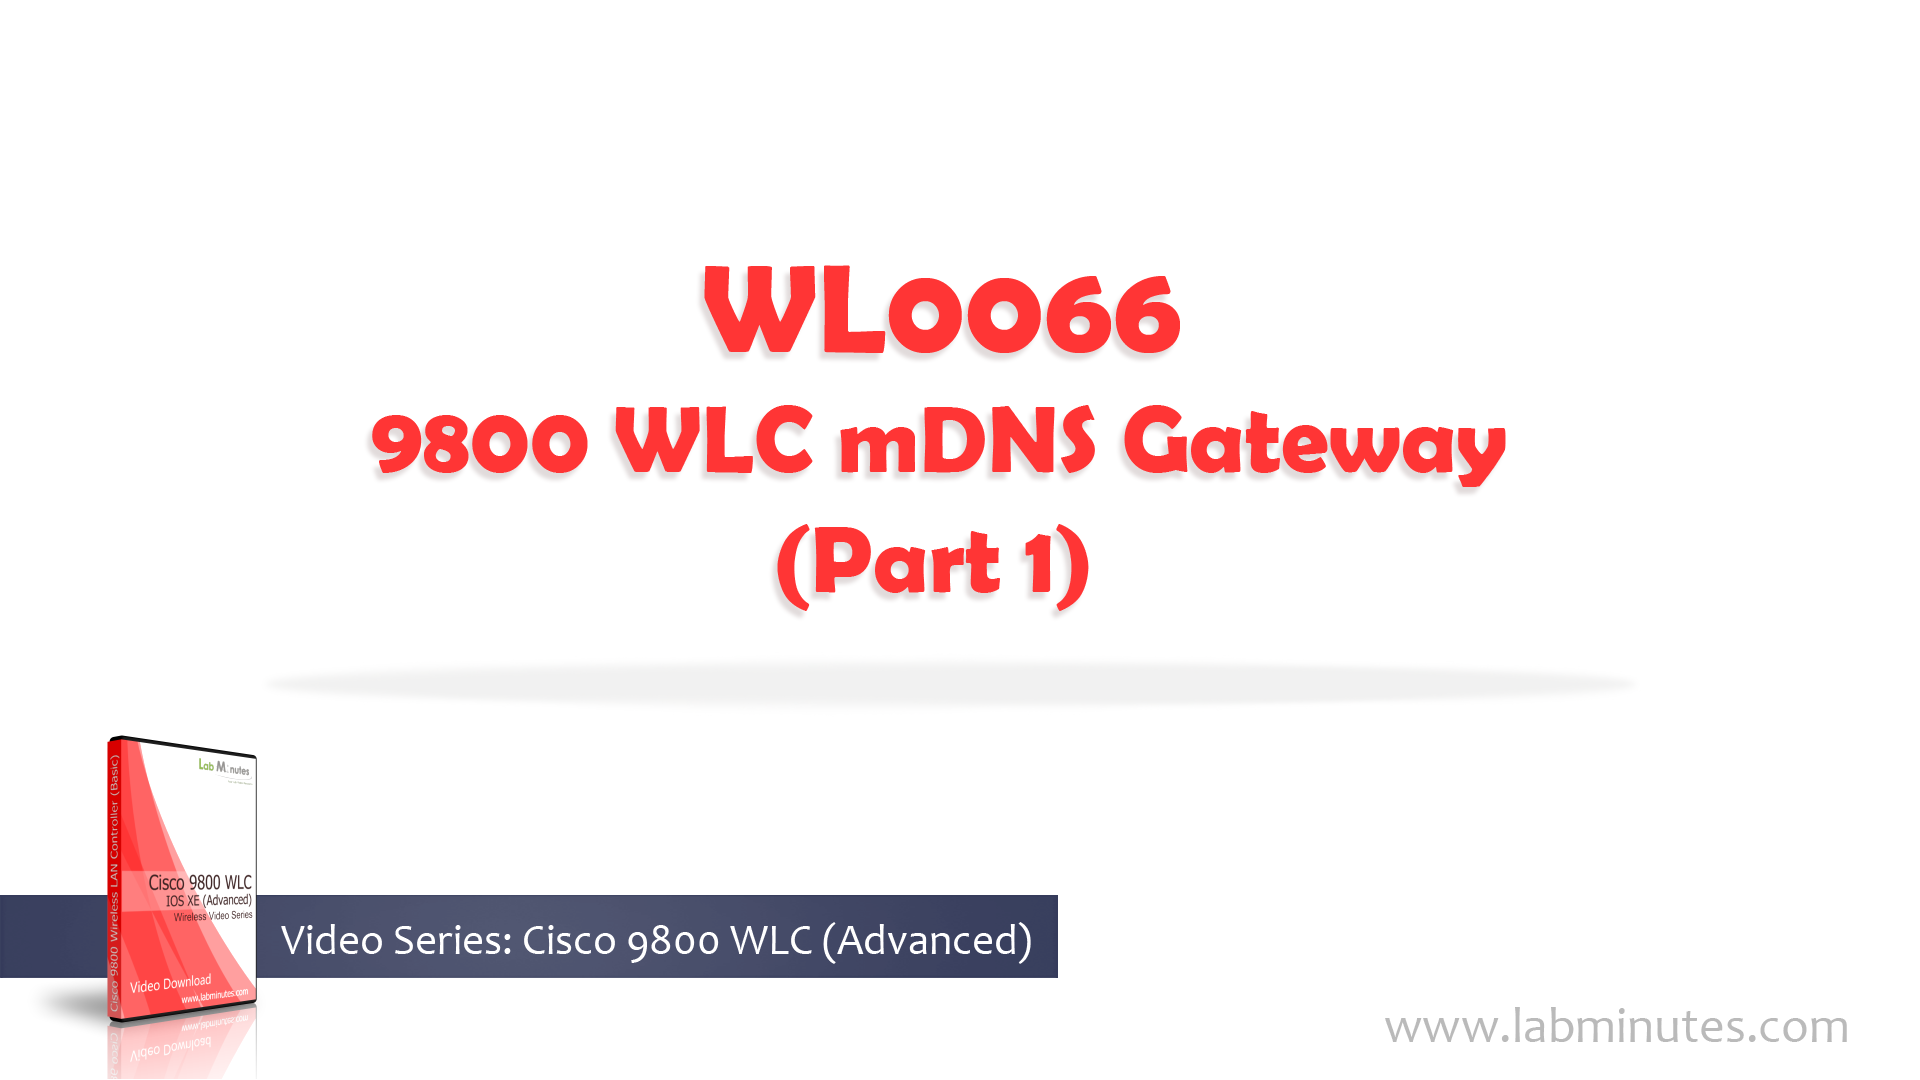 WL0066-1.jpg